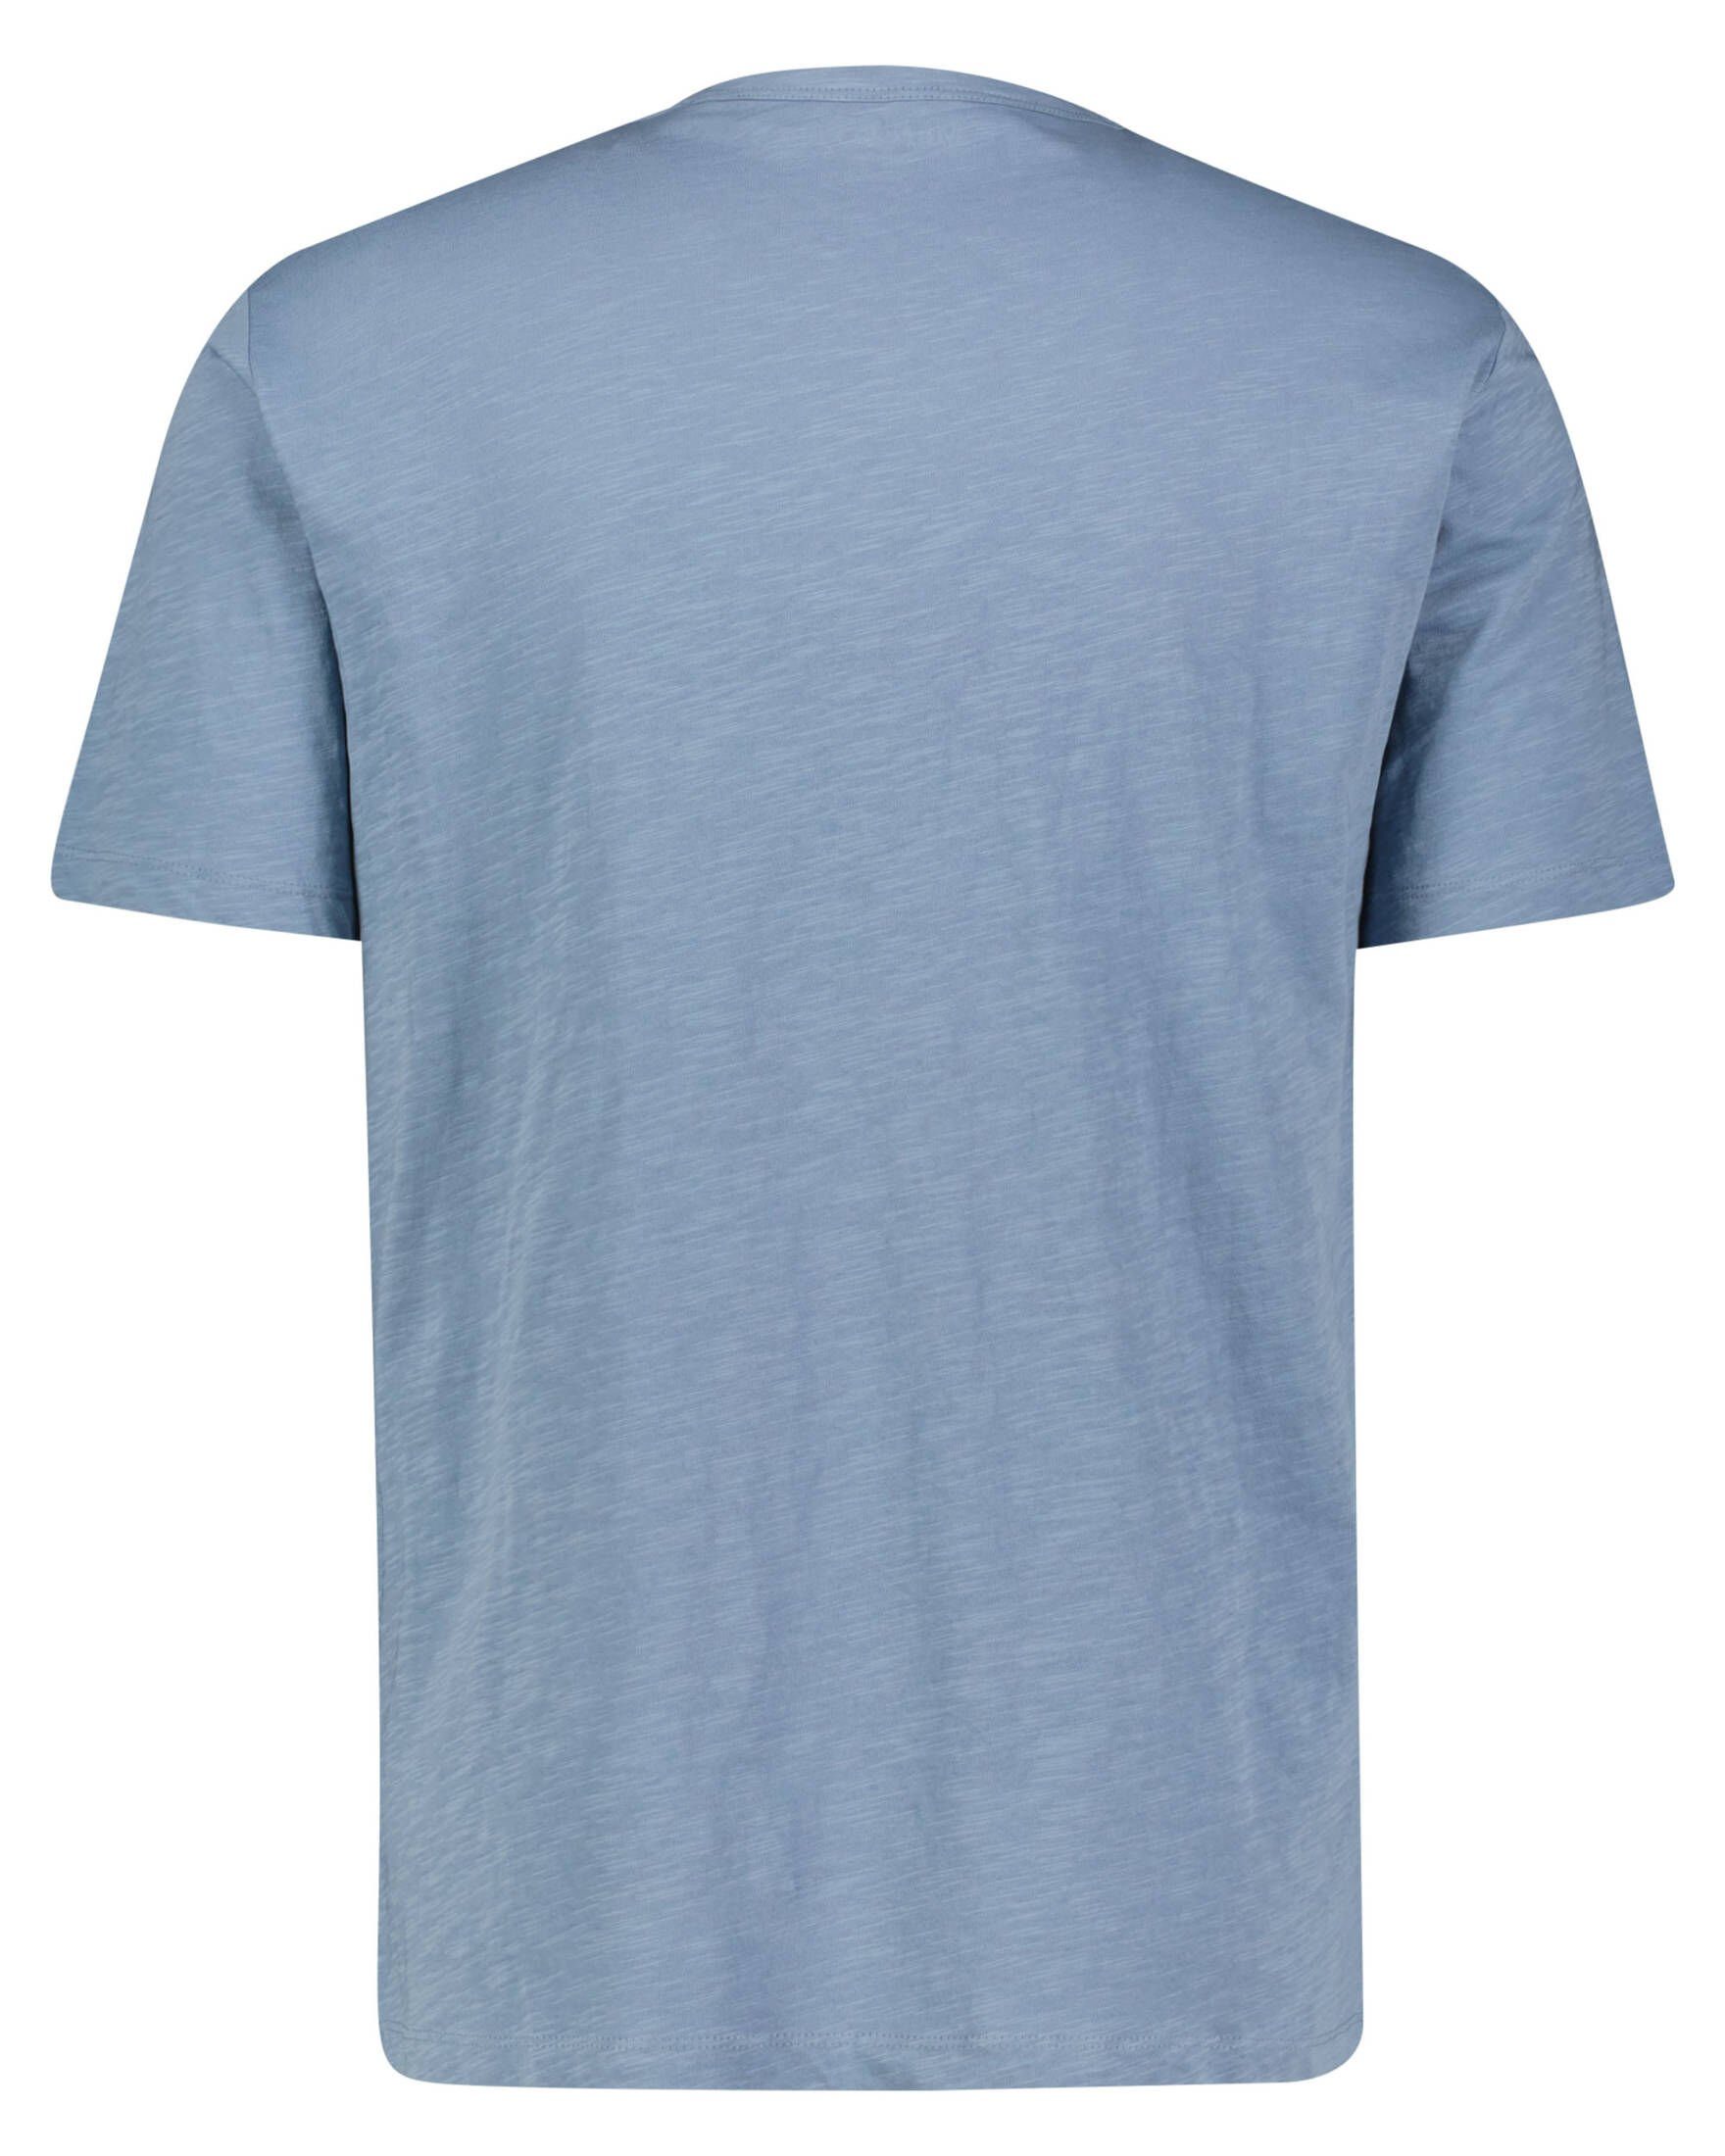 Marc Regular Herren T-Shirt T-Shirt (53) aqua Fit O'Polo (1-tlg)